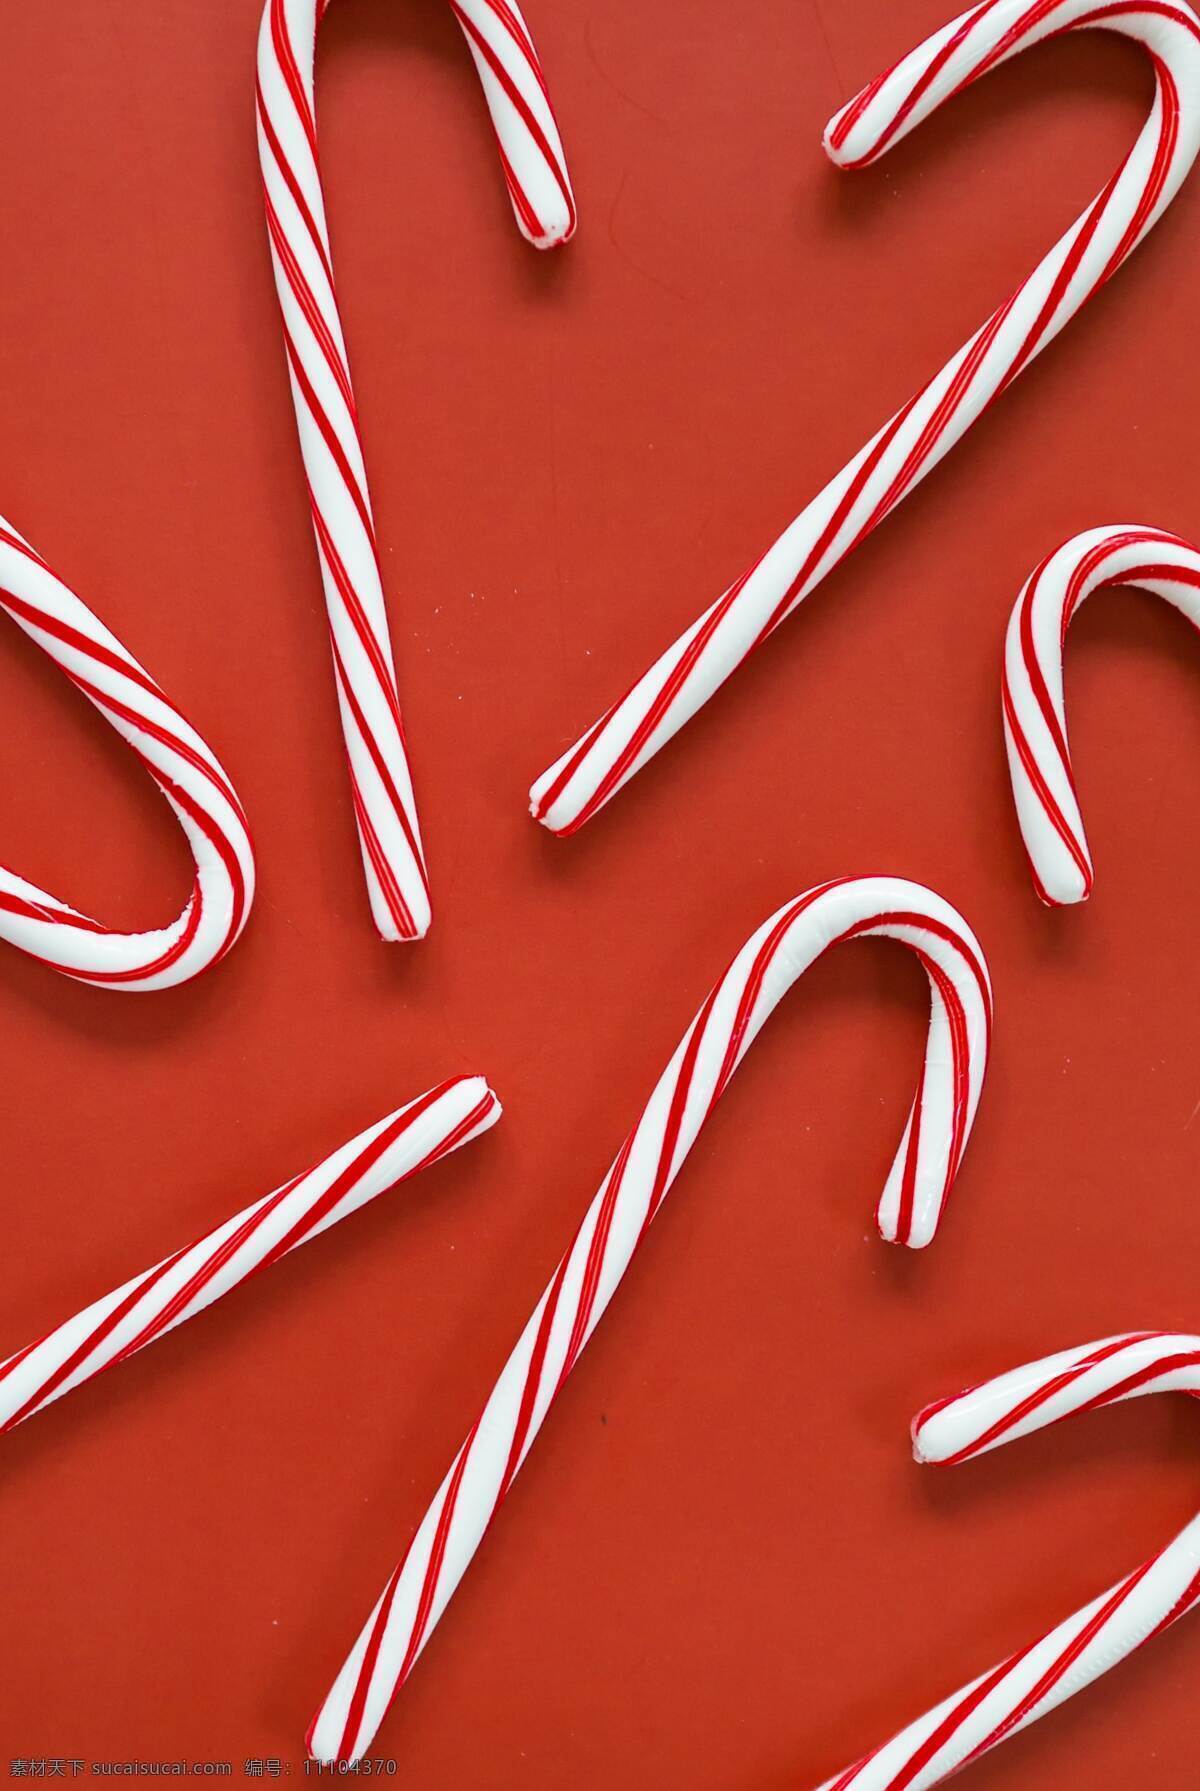 圣诞糖果 糖果 拐杖糖 条纹 红色 背景 圣诞 底纹边框 背景底纹